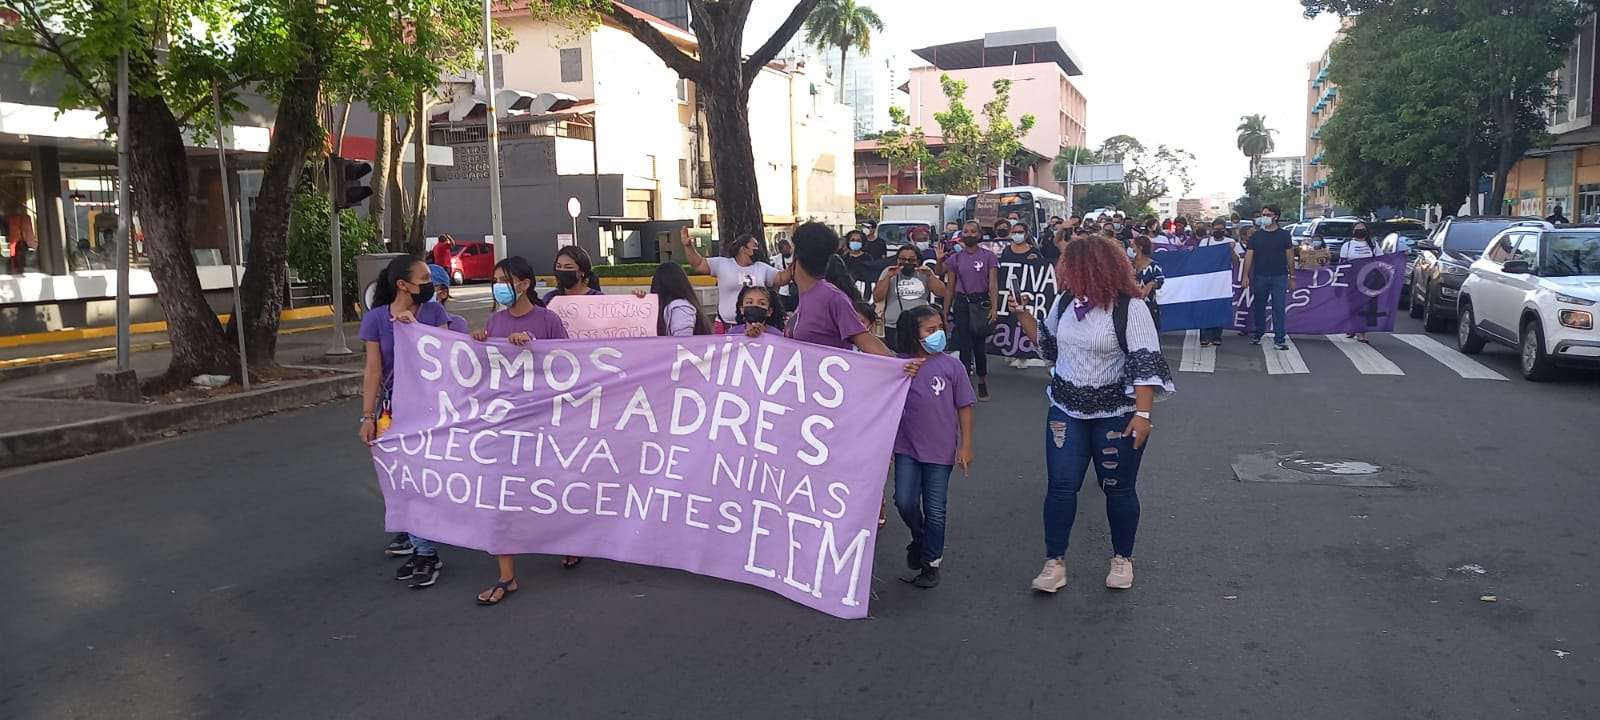 Las manifestantes portaban pancartas con mensajes en defensa de la mujer. Fotos: Alexander Santamaría 